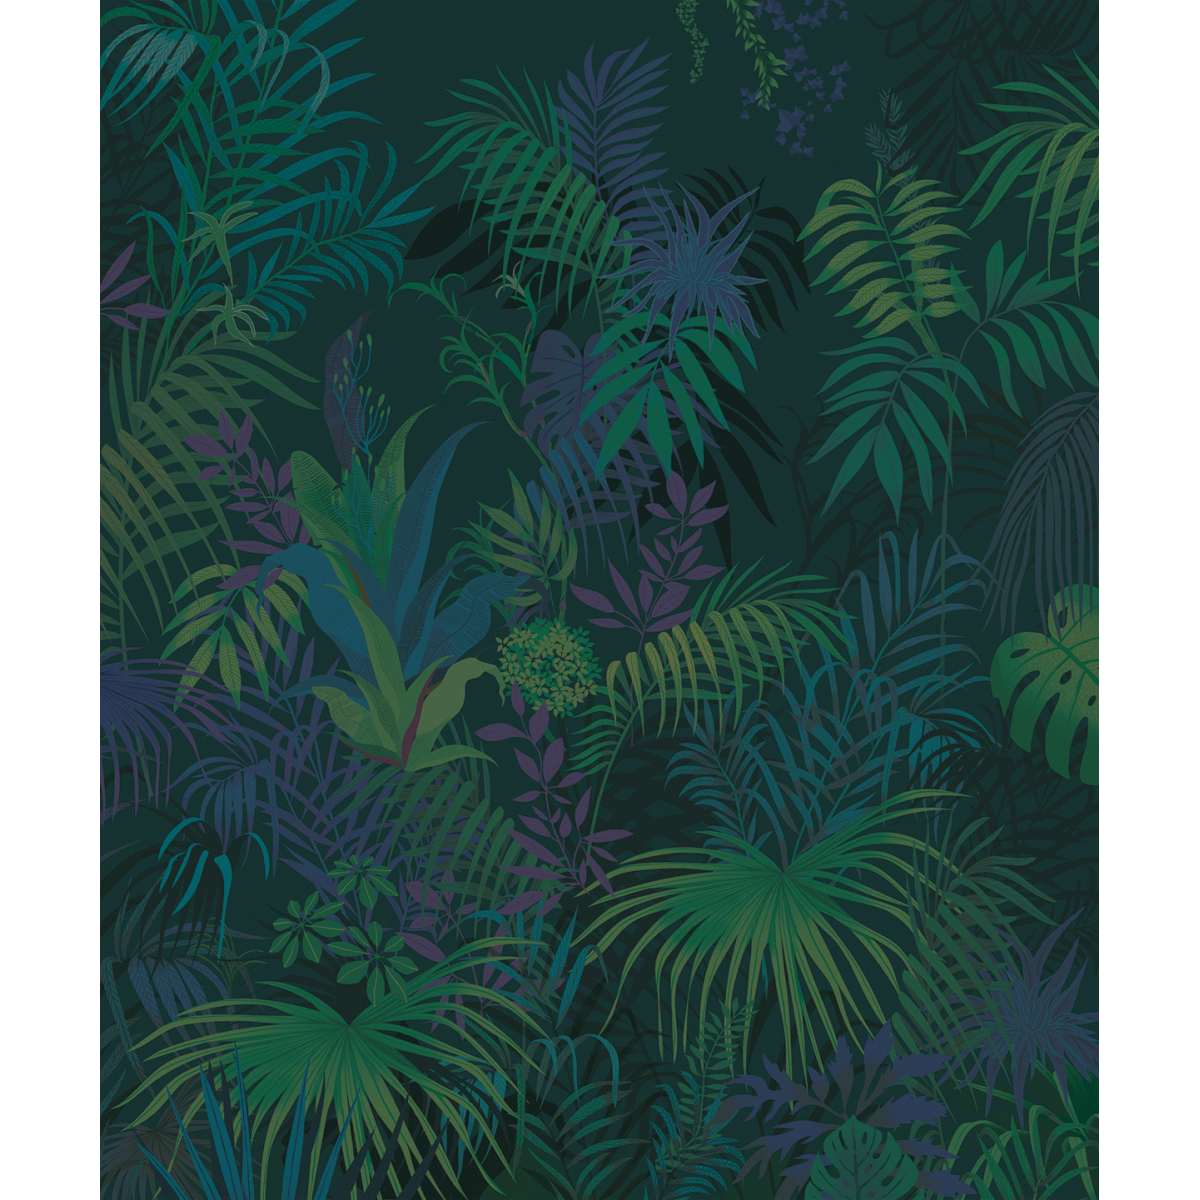 Panorama-Wallpaper Jungle Chamarée von Peggy Nille - Acte-Deco